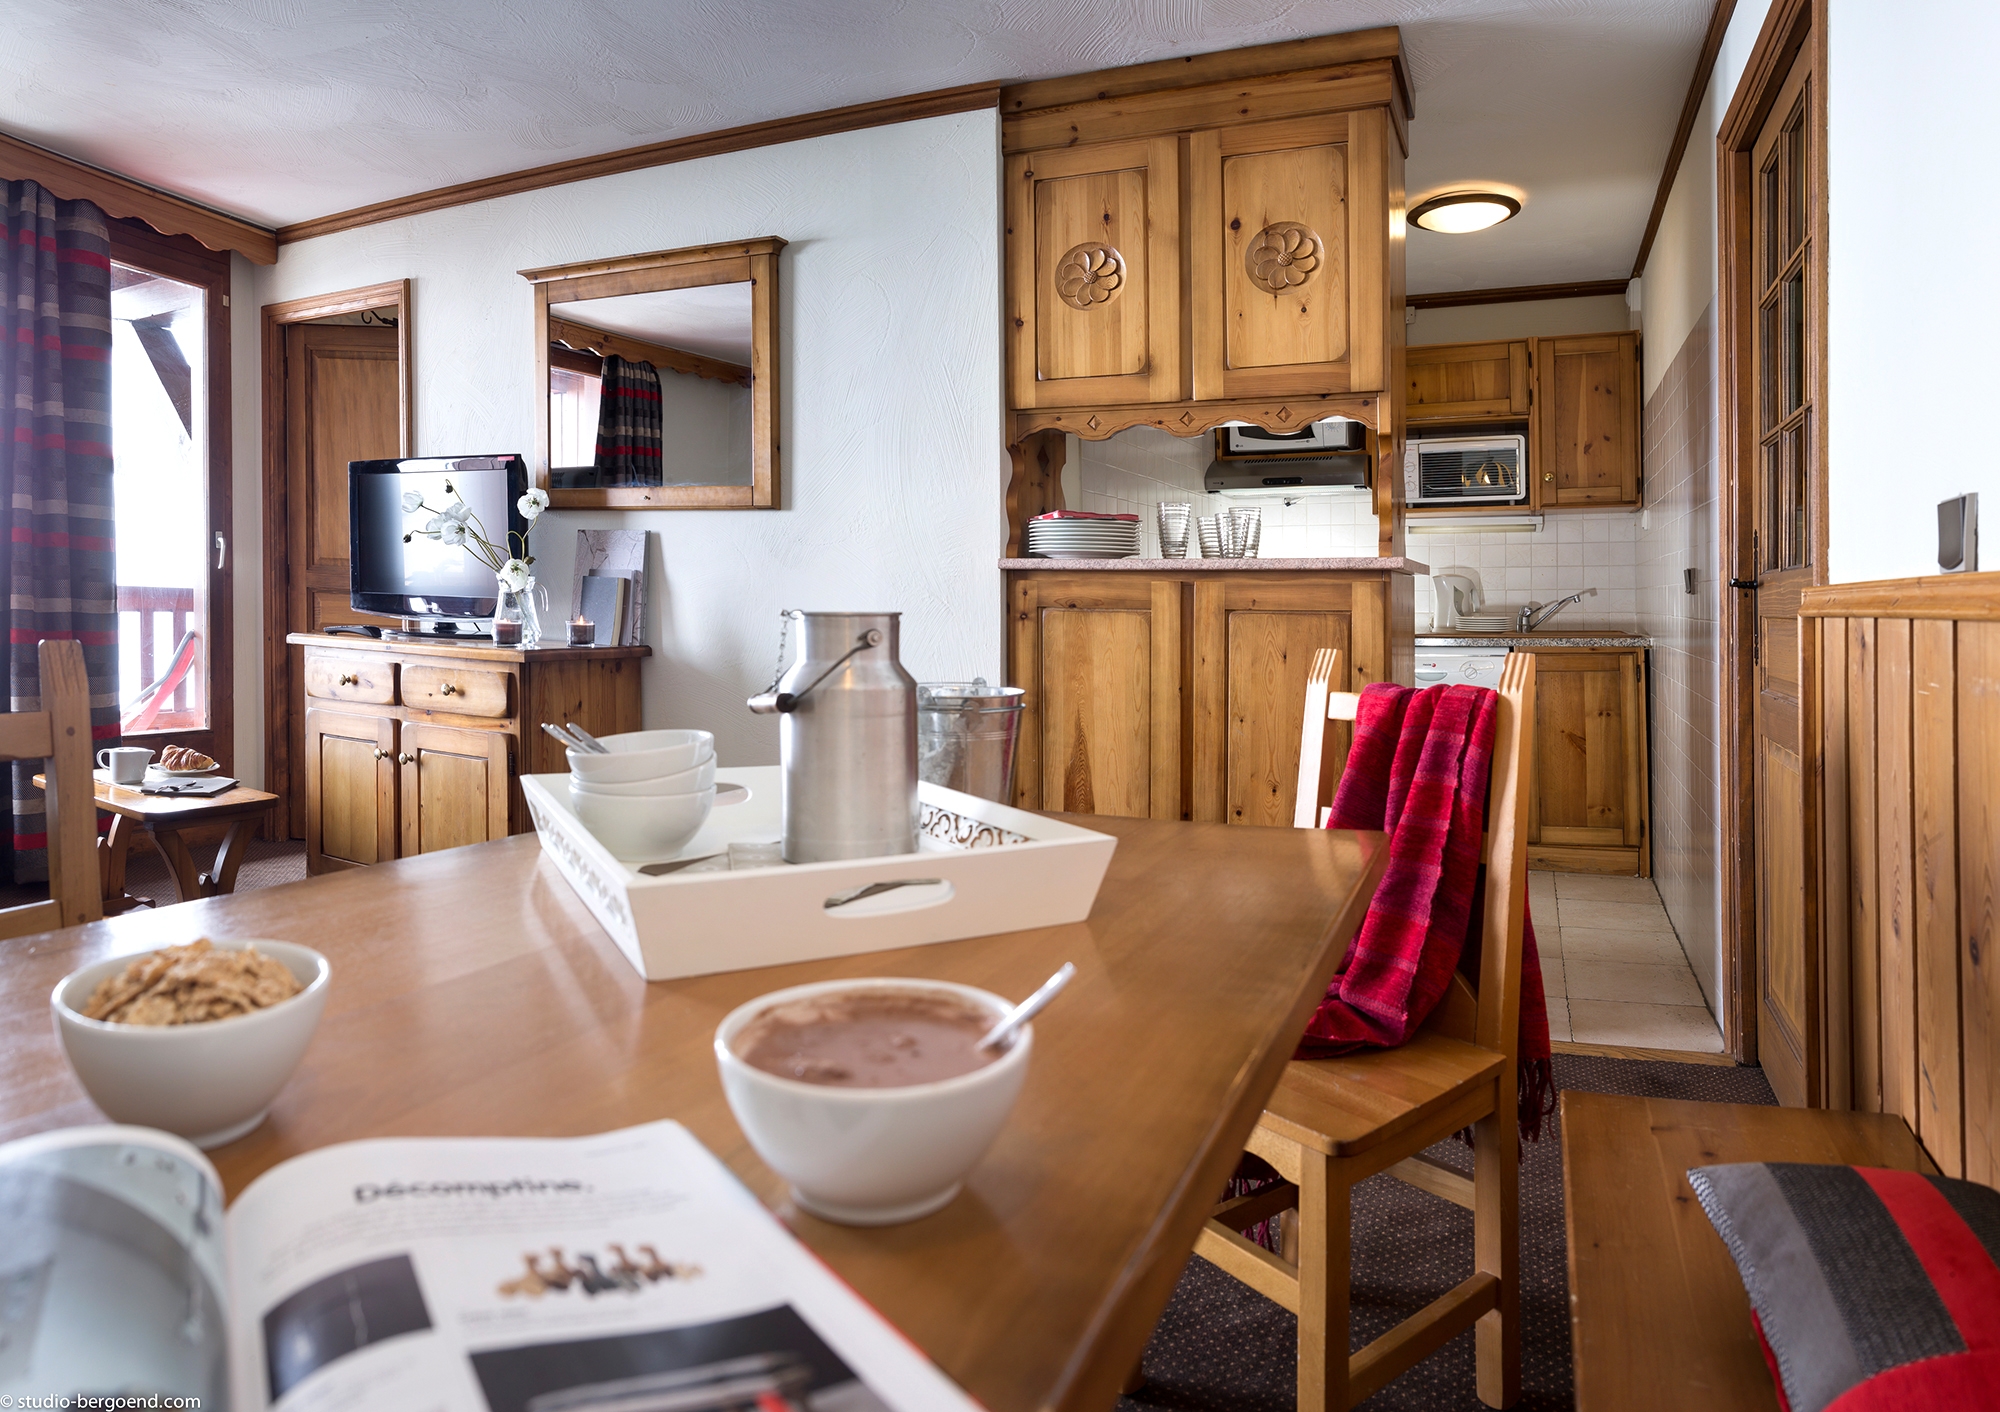 Village Montana: Appartement für 4 Personen - Wohnraum (Beispiel)